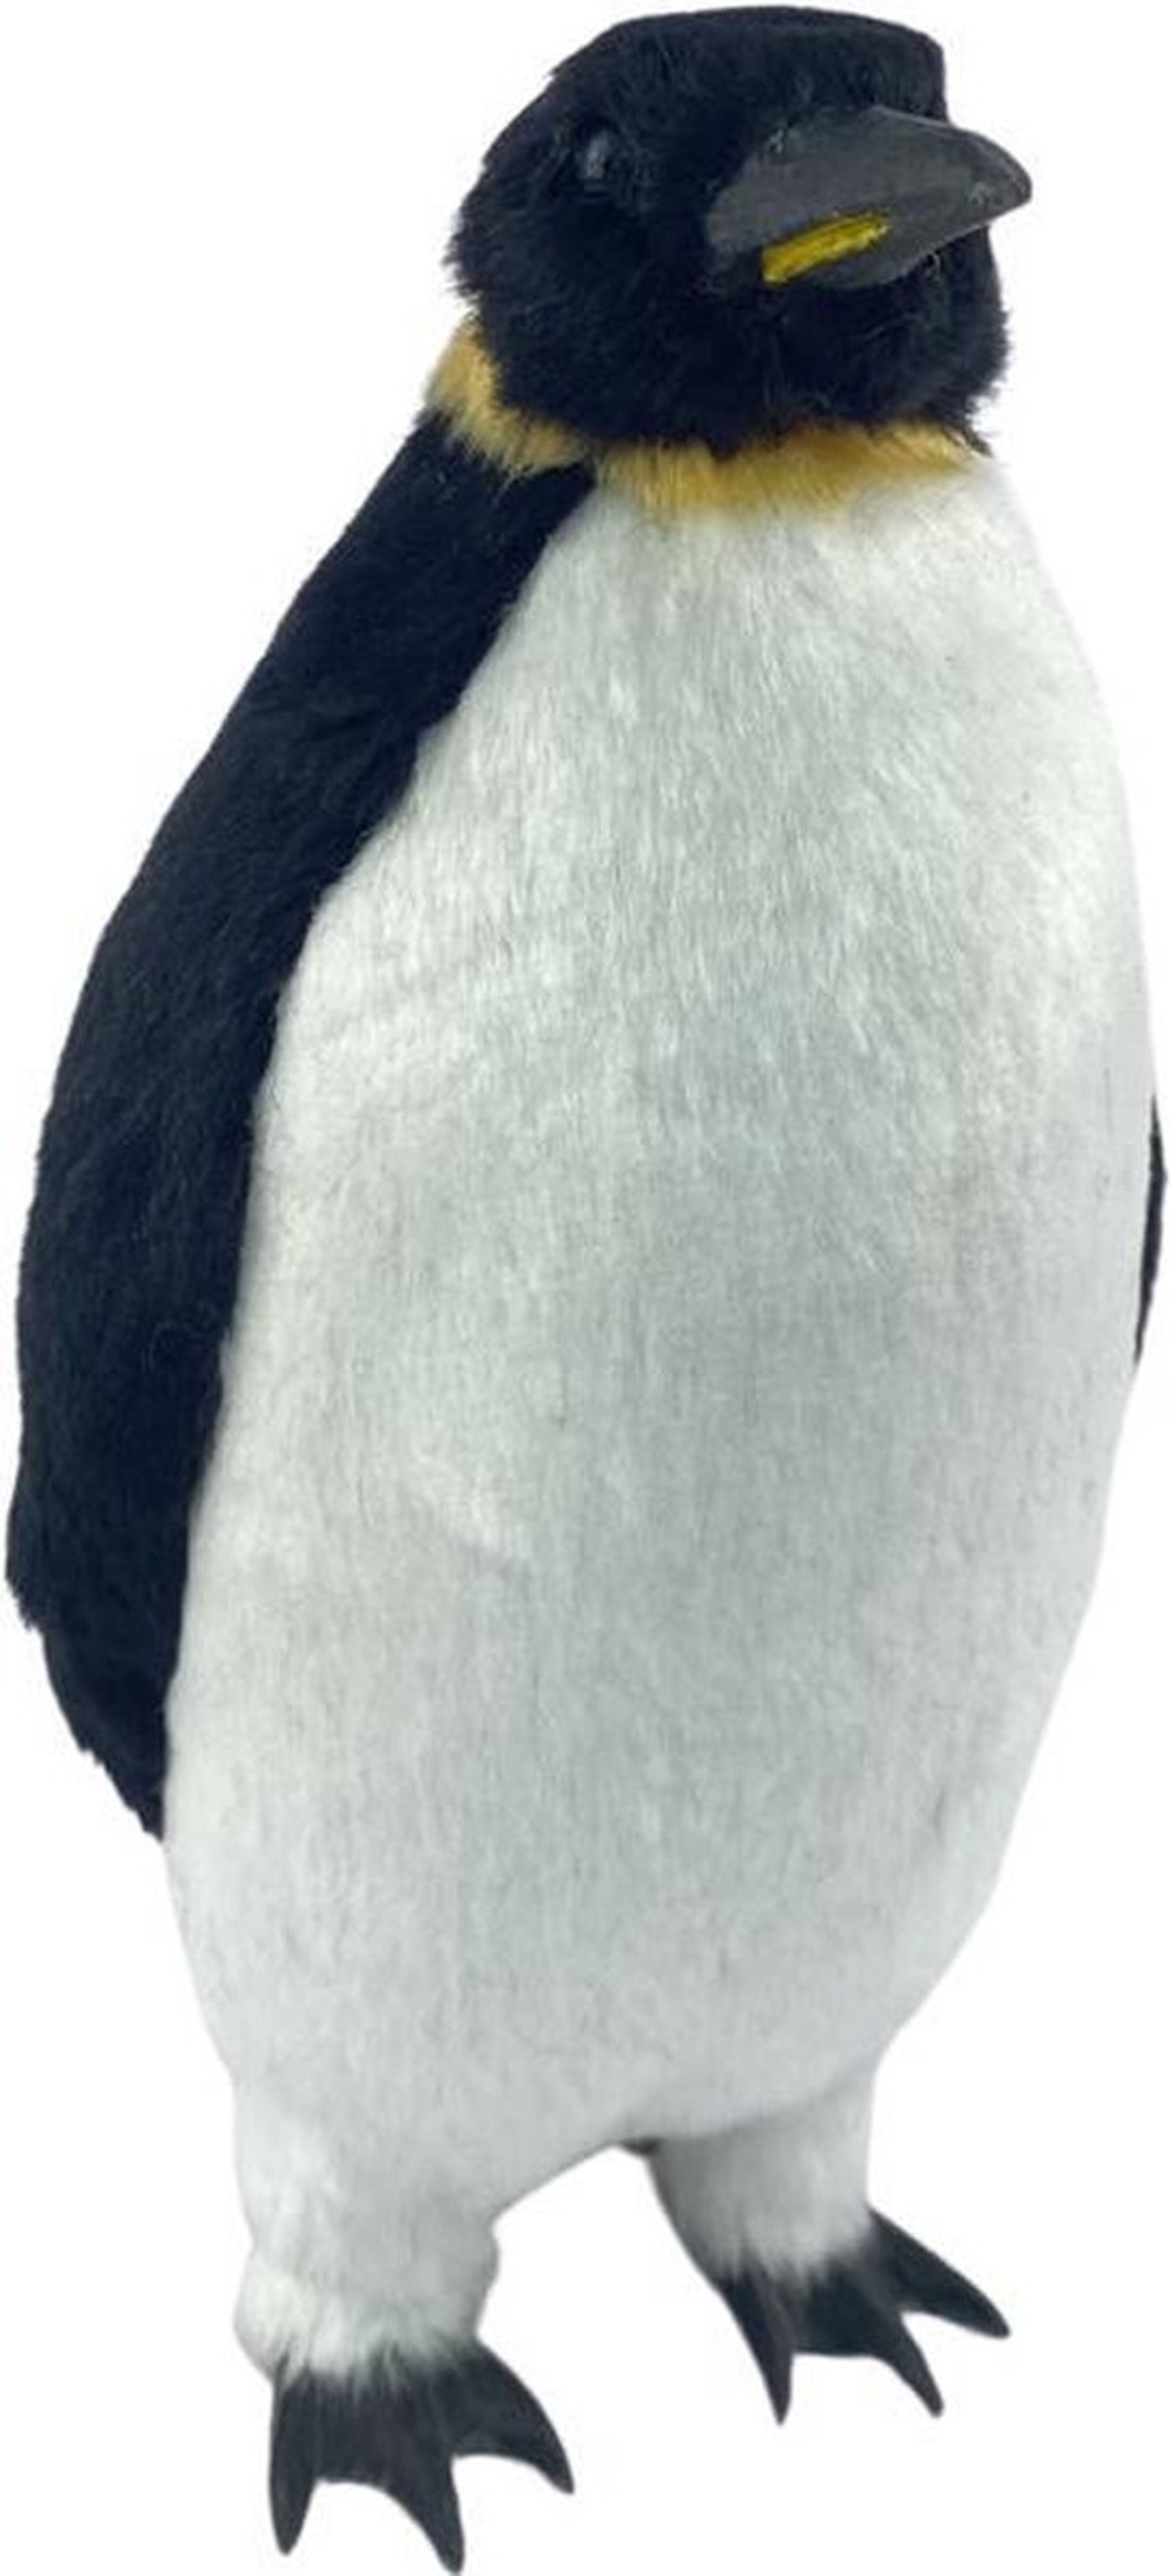 Kaufen Sie Pinguin stehend - 22 cm  Kuscheliger Pinguin mit echten Details  zu Großhandelspreisen